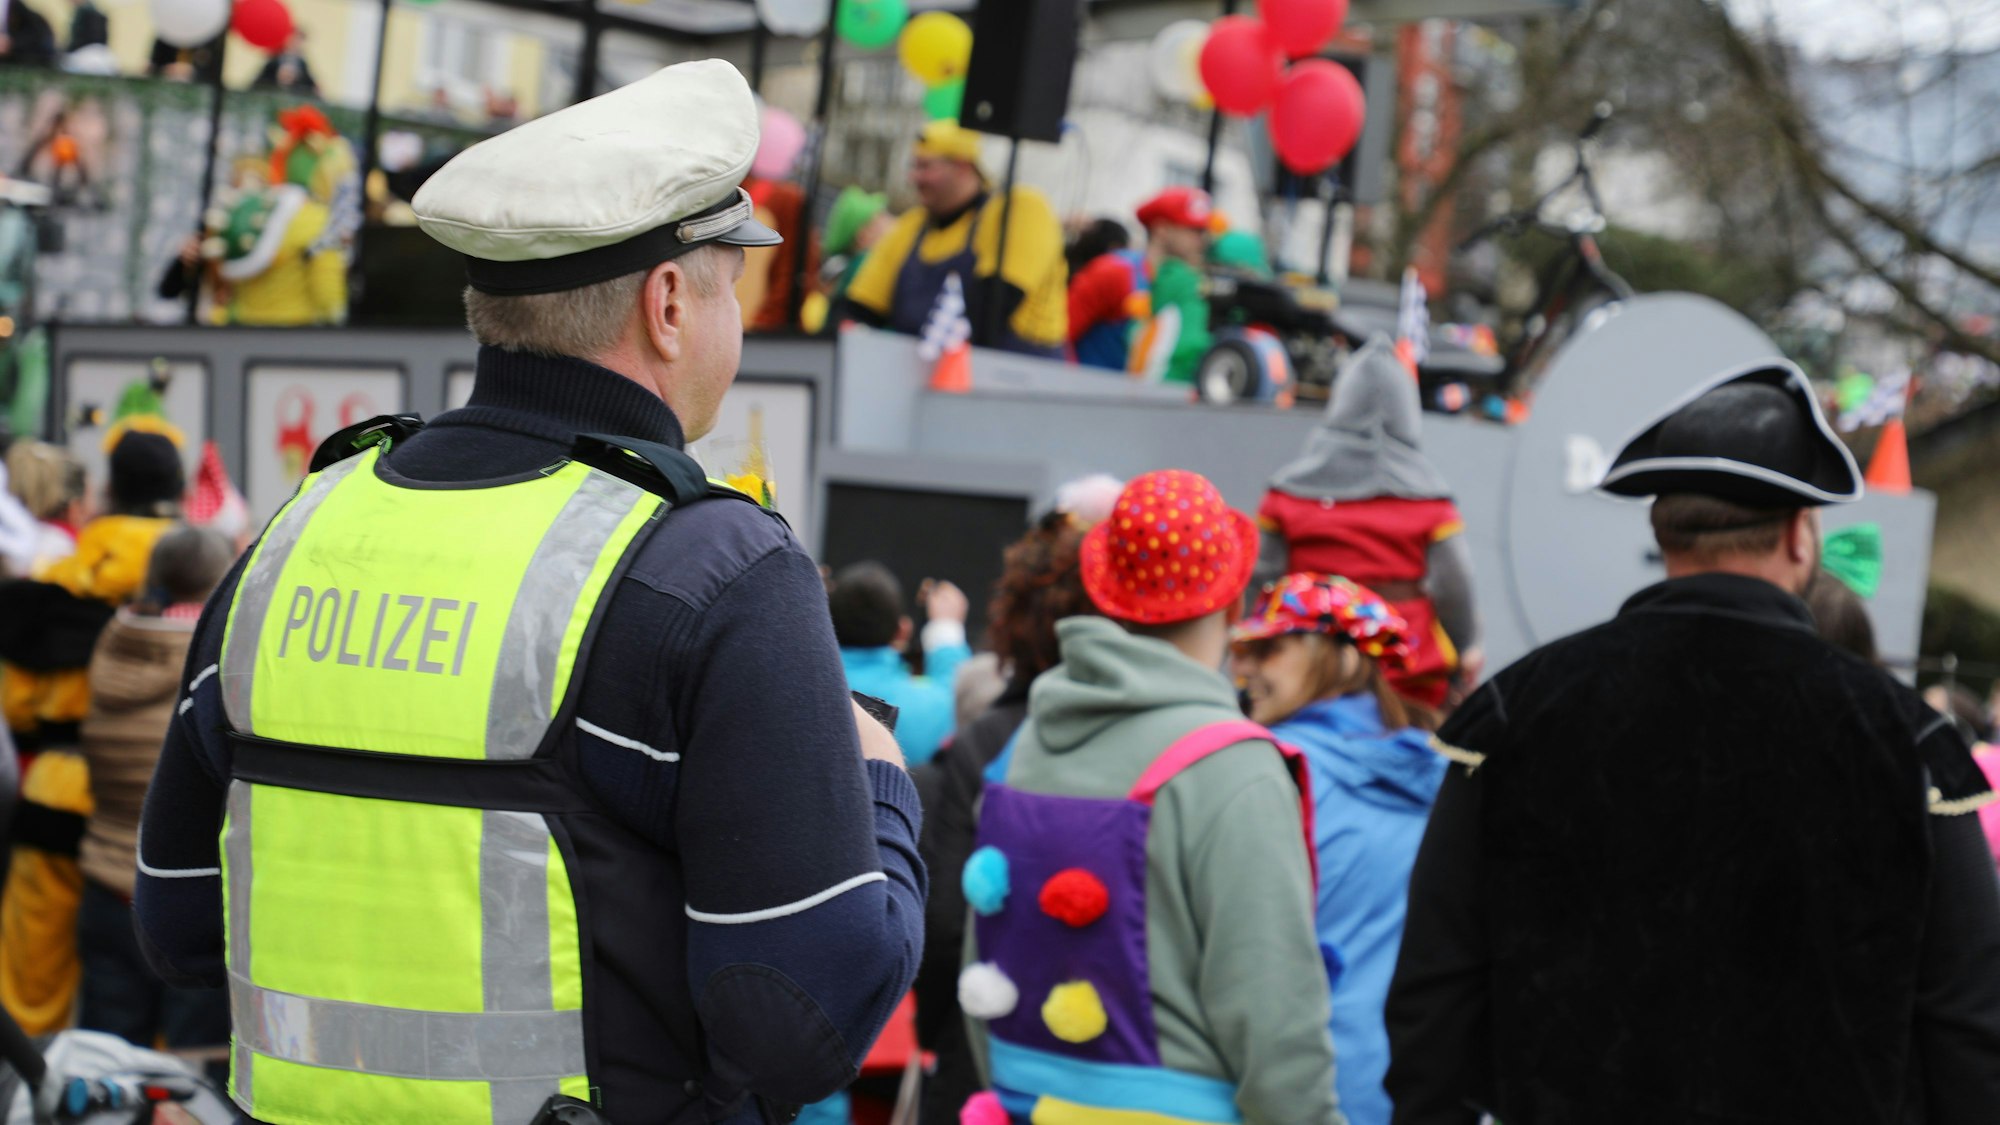 Ein Polizist steht am Rande des Kürtener Karnevalszugs und blickt auf das bunte Treiben.